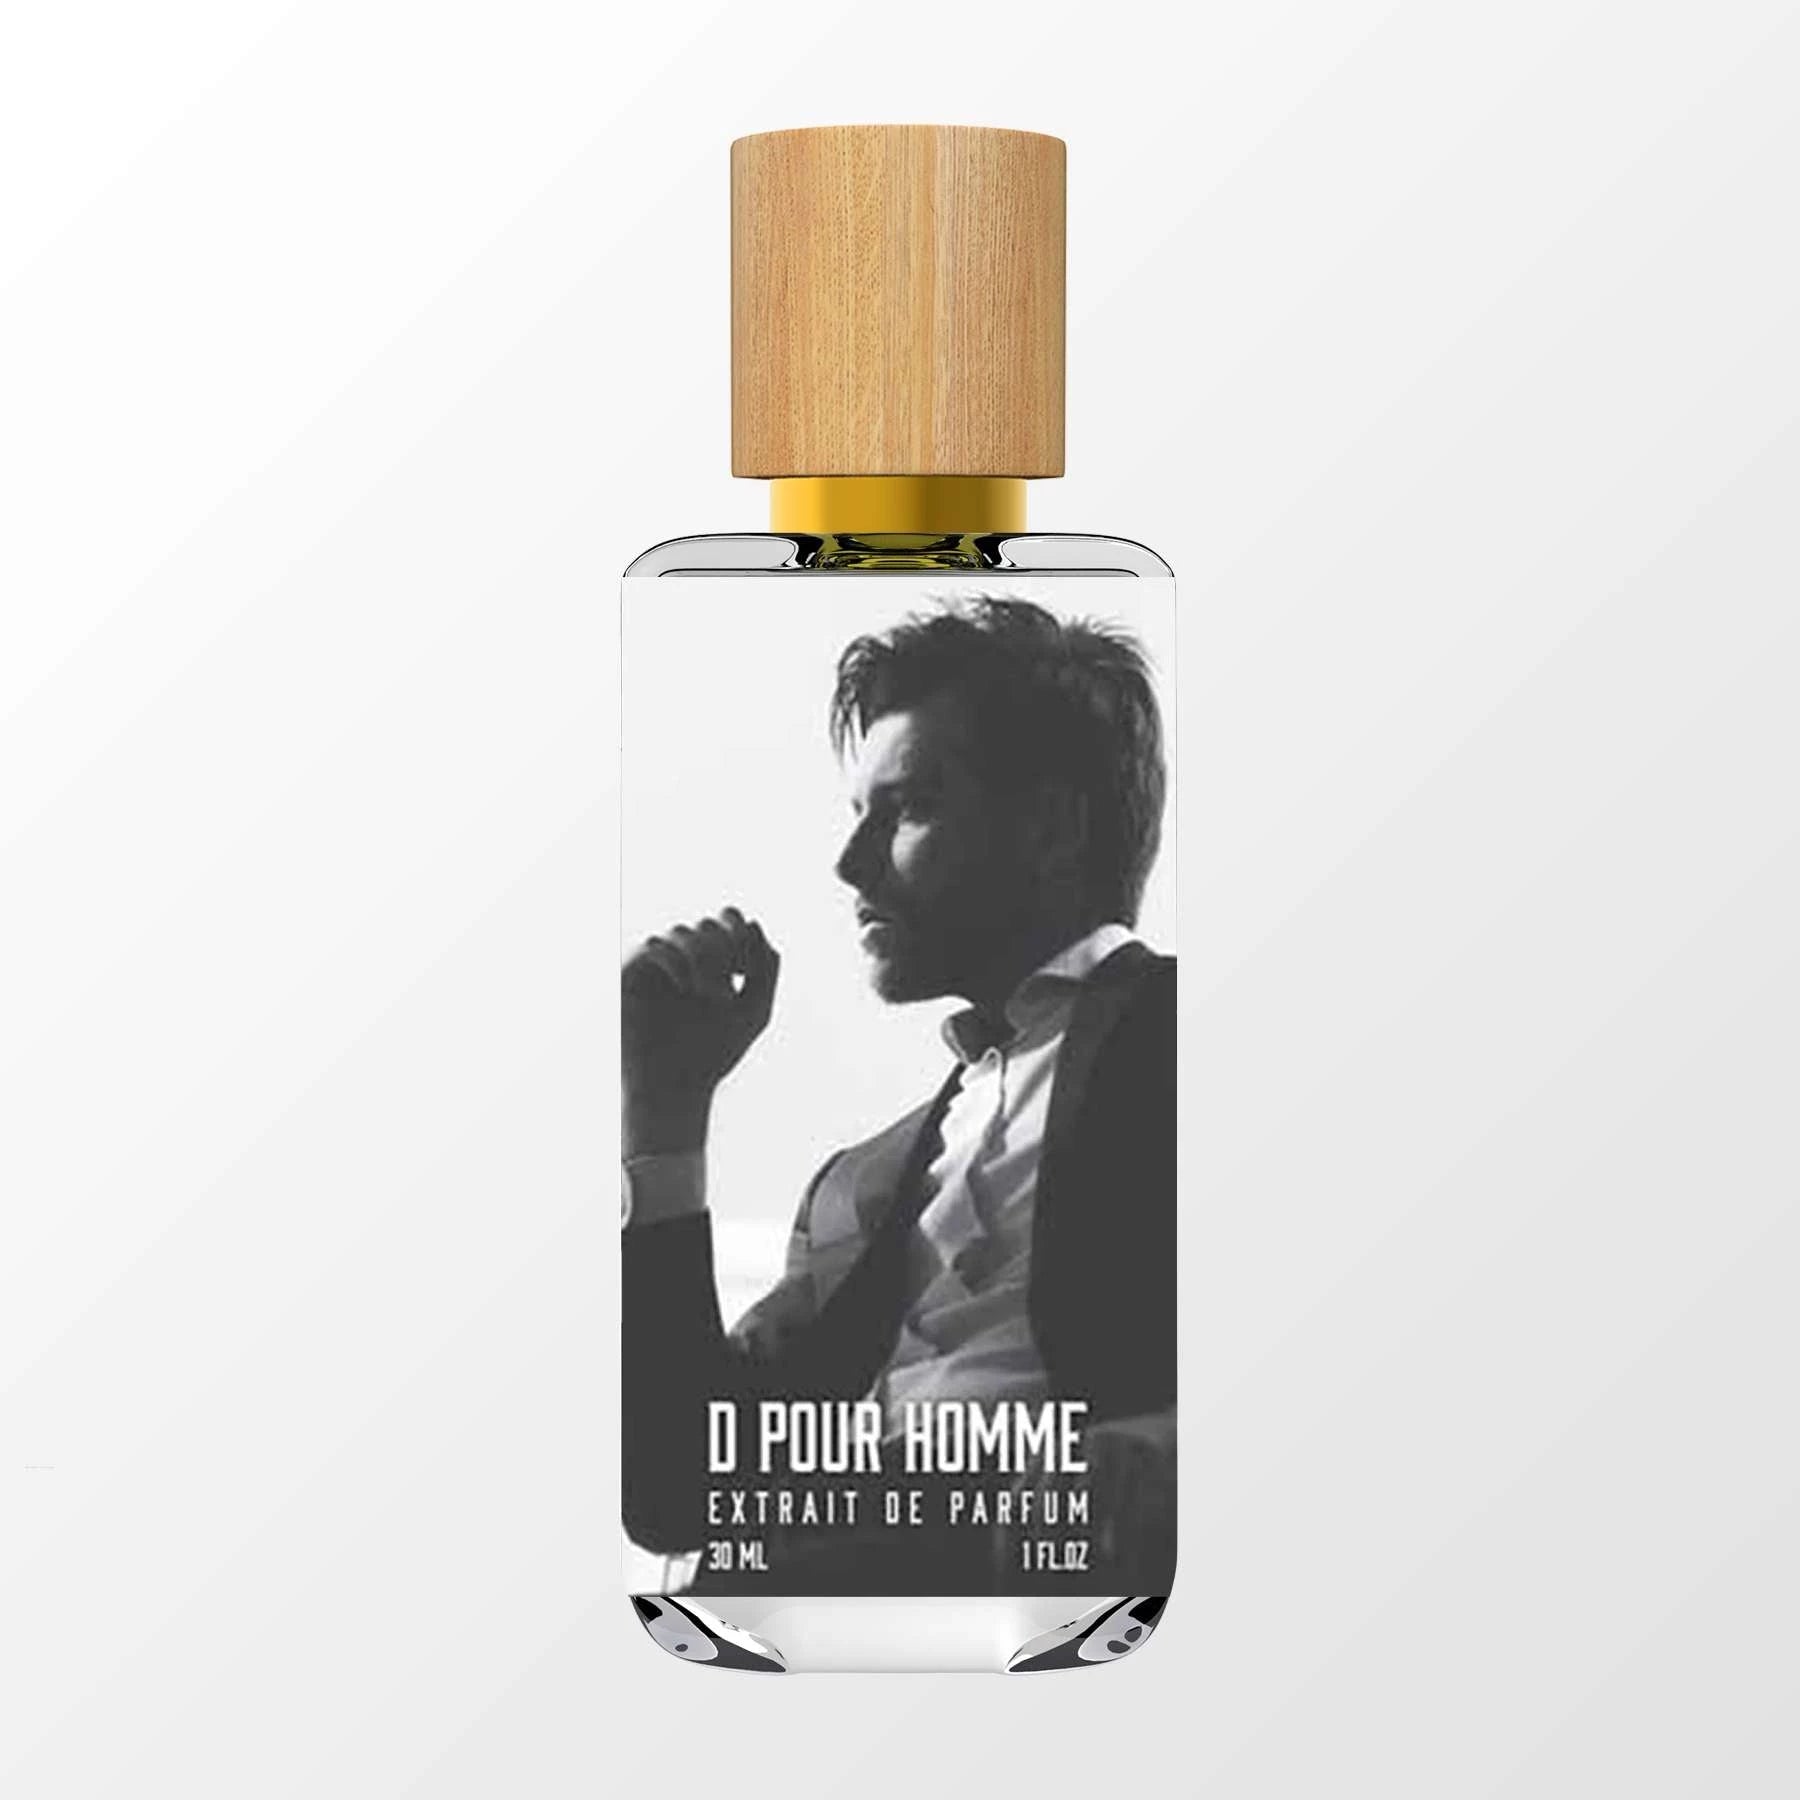 D Pour Homme - DUA FRAGRANCES - Inspired by V Pour Homme formulation) Valentino - Masculine Perfume - 34ml/1.1 FL OZ - De Parfum